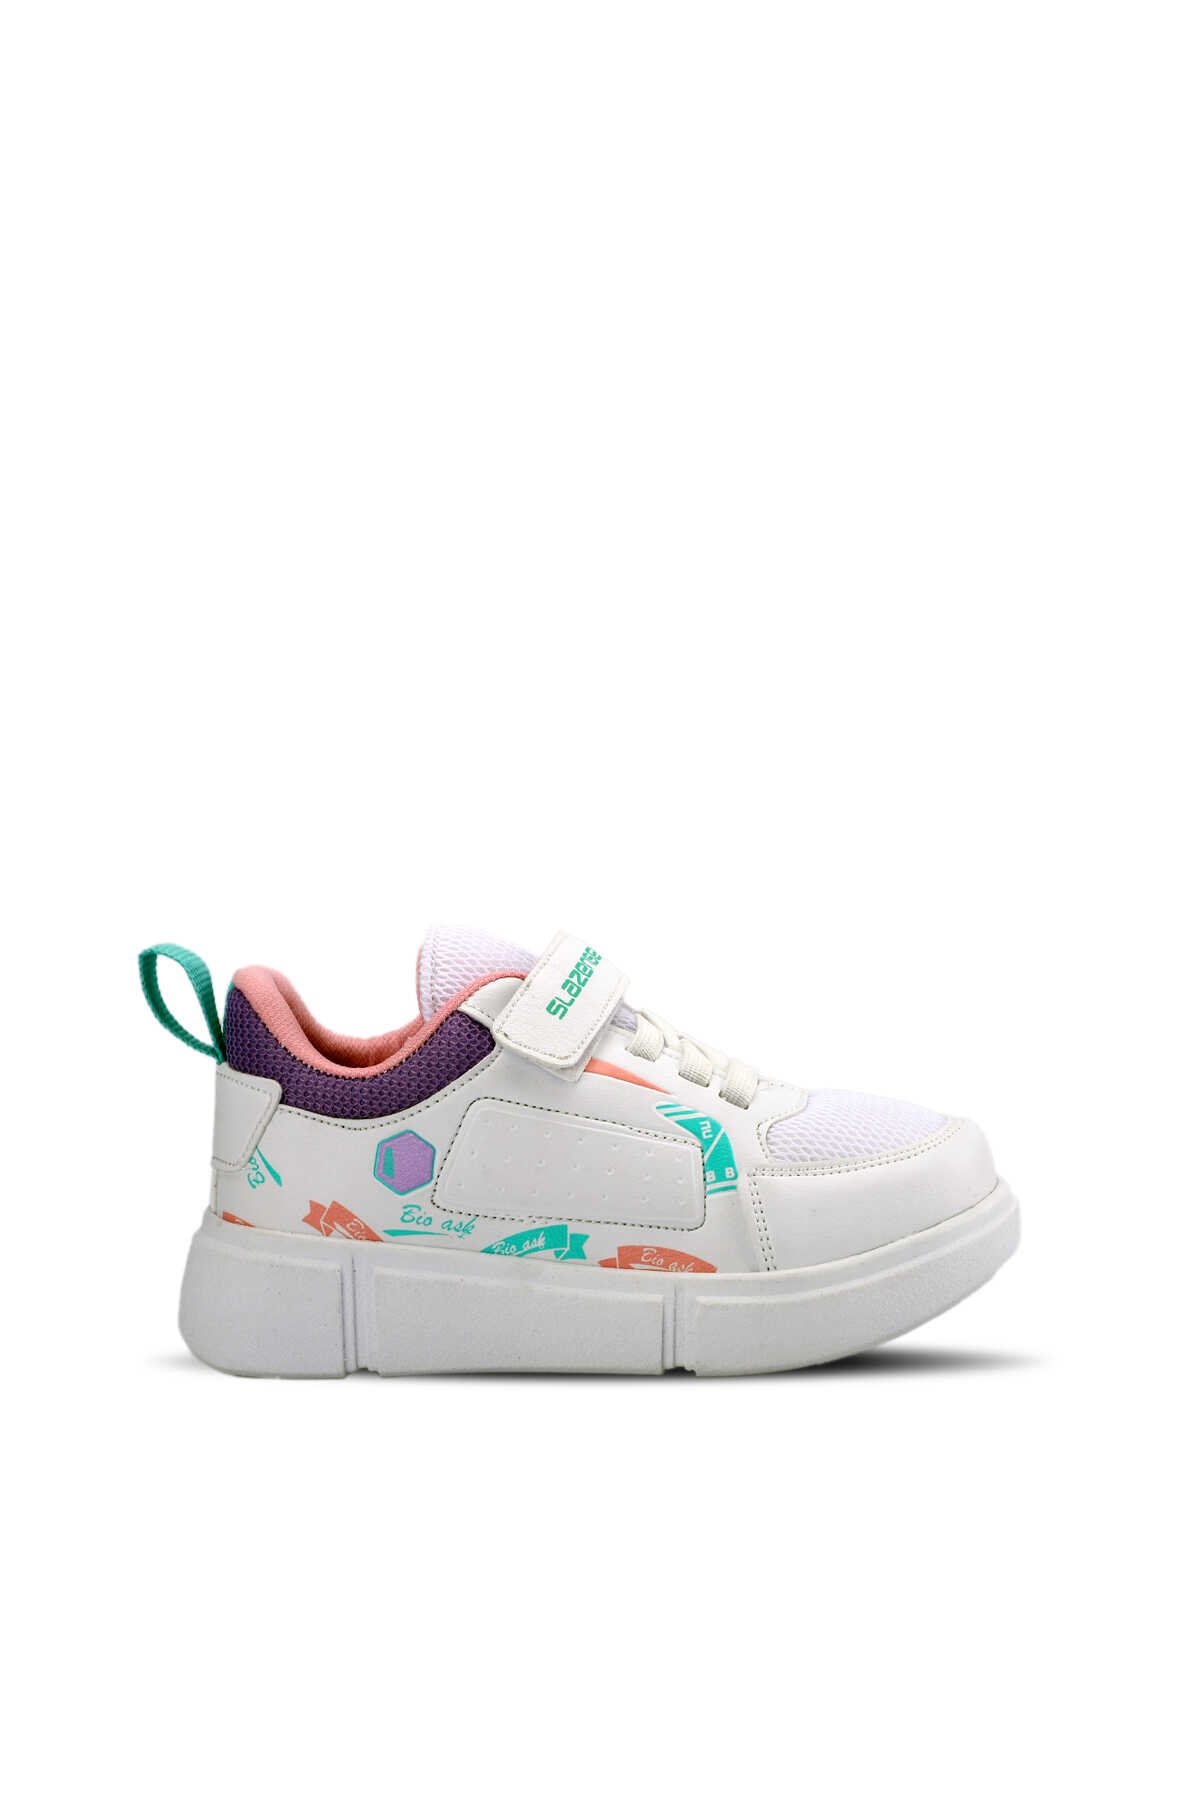 Slazenger - KEPA KTN Sneaker Kız Çocuk Ayakkabı Beyaz / Mor